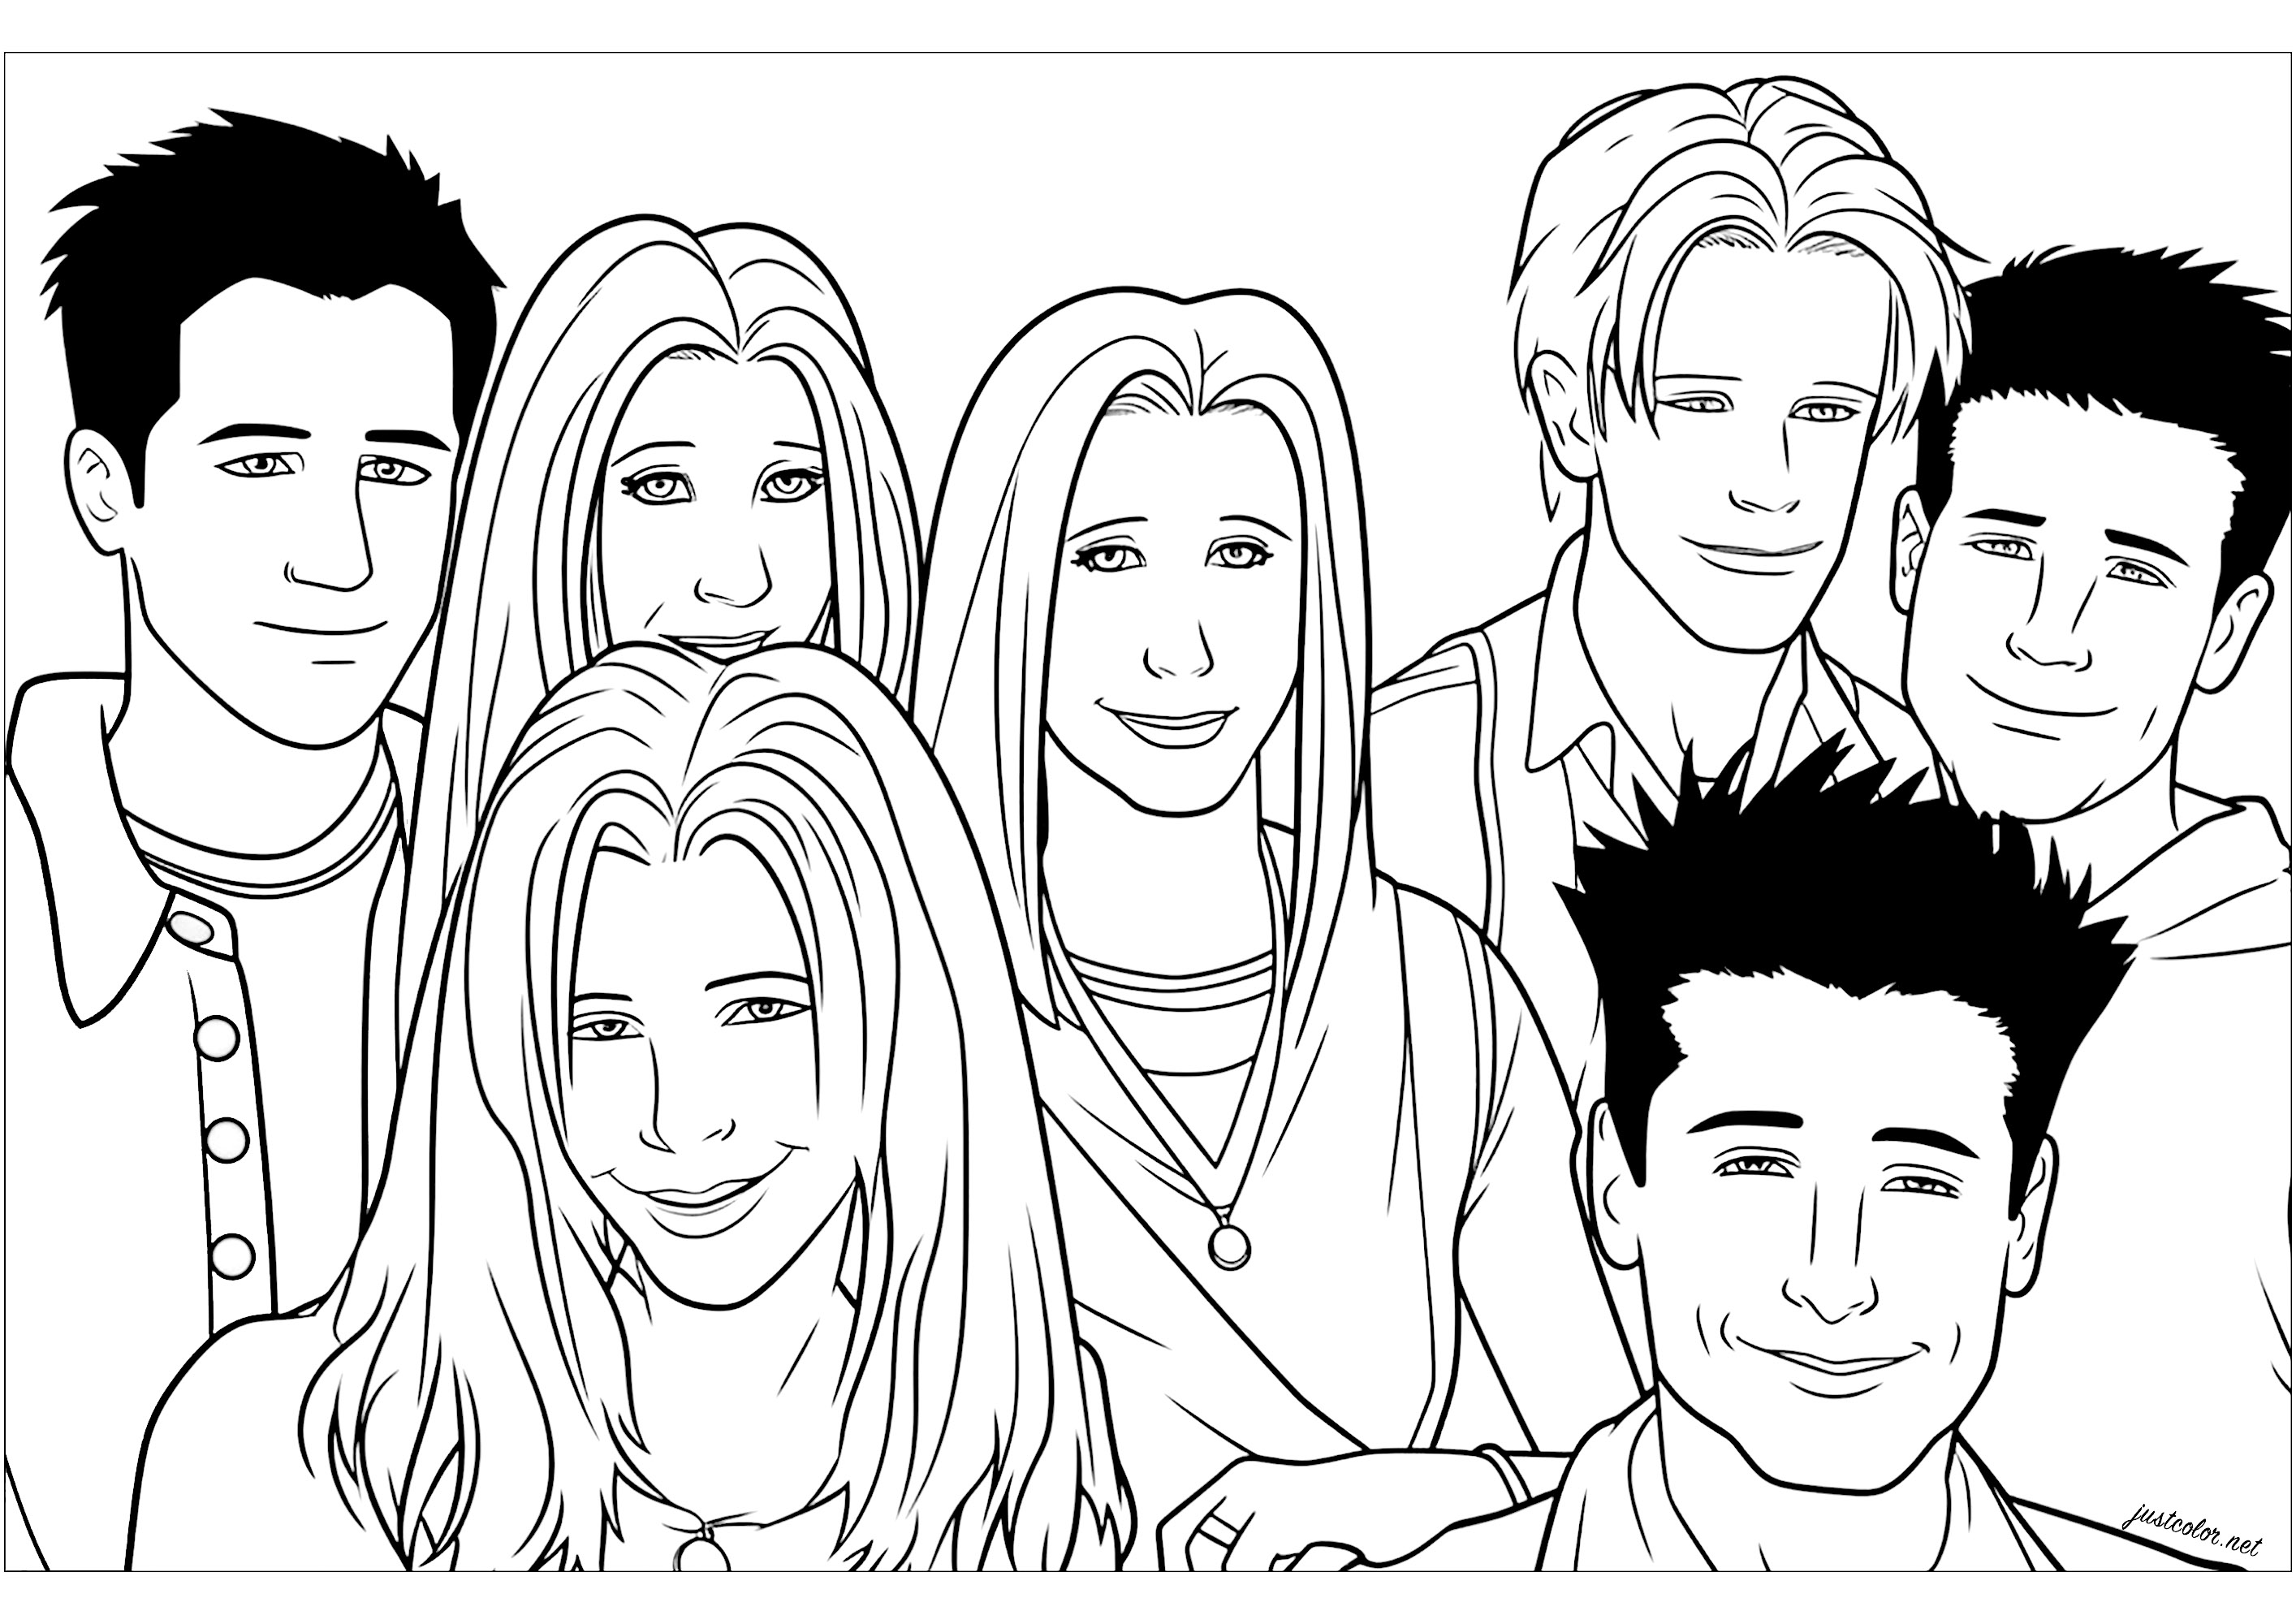 4 ragazzi e 3 ragazze ...... come una serie cult degli anni '90!. Perfetto per i nostalgici degli anni '90, per Brenda, Dylan, Brandon... O Monica, Rachel, Chandler, Ross...